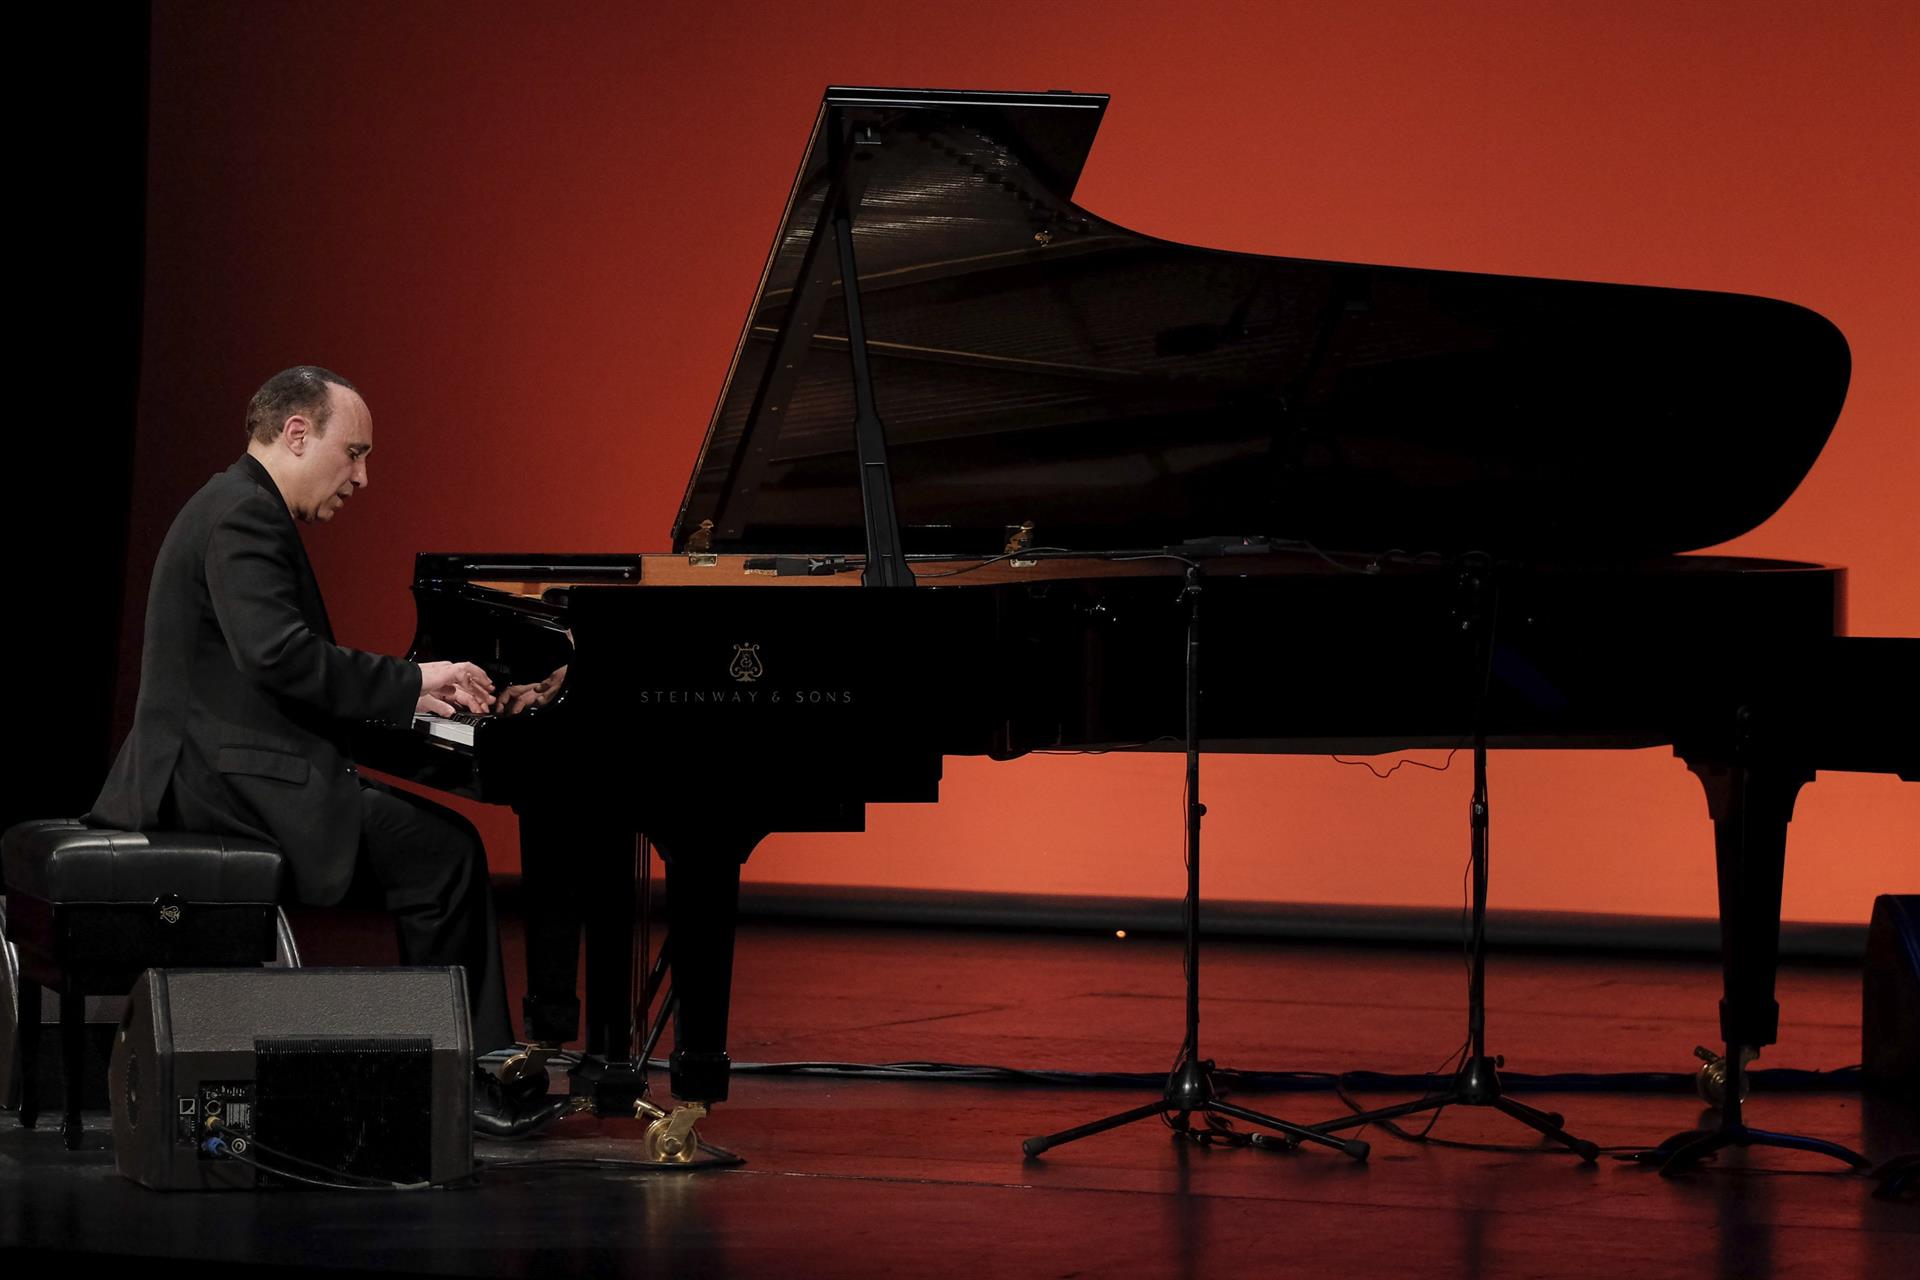 Foto de archivo del pianista dominicano Michel Camilo tomada durante el concierto que ofreció en el Teatro Pérez Galdós de Las Palmas de Gran Canaria en marzo de 2016. EFE/Ángel Medina G.